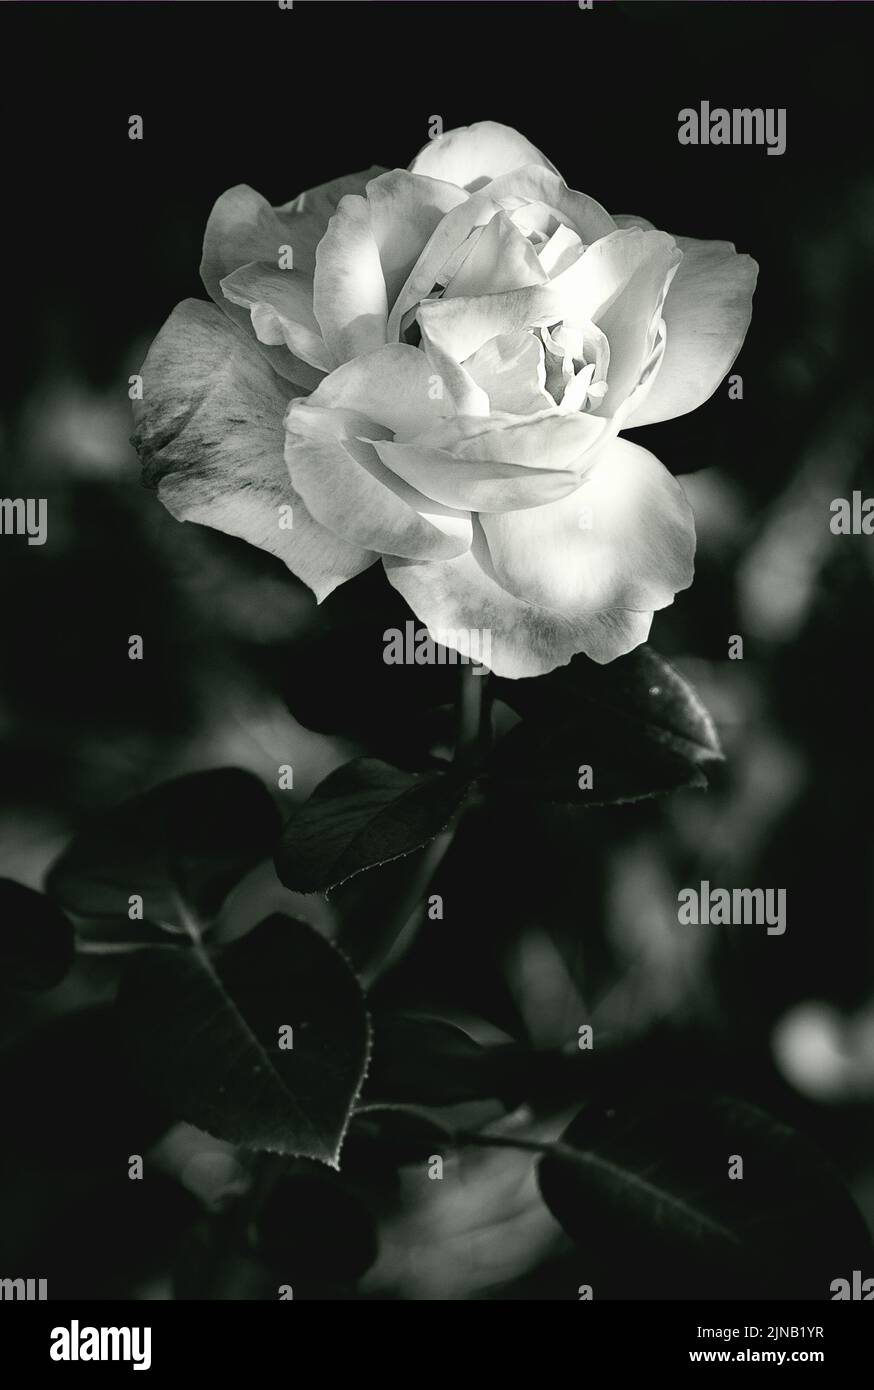 Hybrid Tea Rose, white flower at shady garden Stock Photo